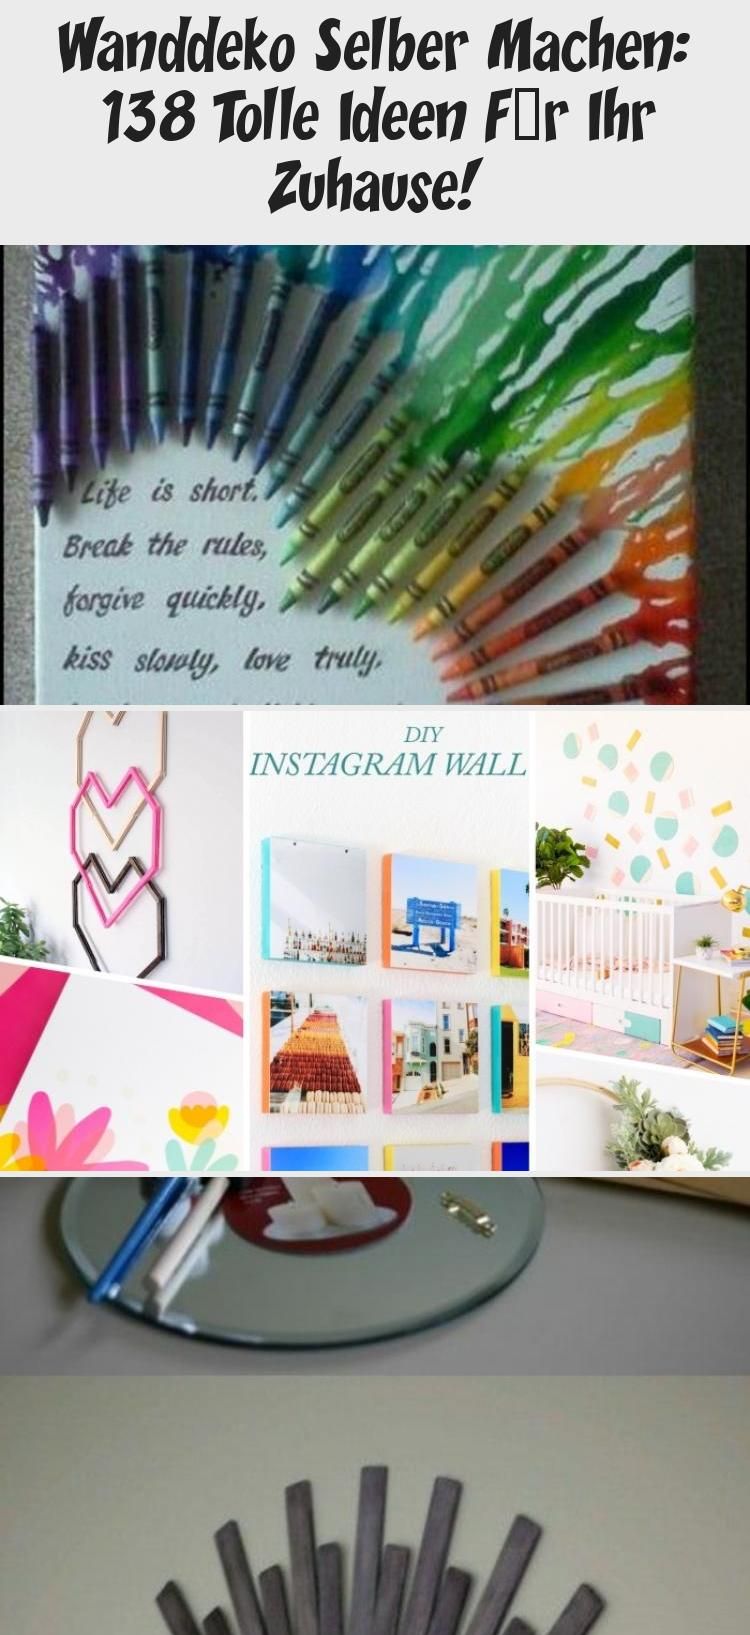 Wanddeko Ideen Selbermachen Einzigartig Wanddeko Selber Machen 138 tolle Ideen Für Ihr Zuhause